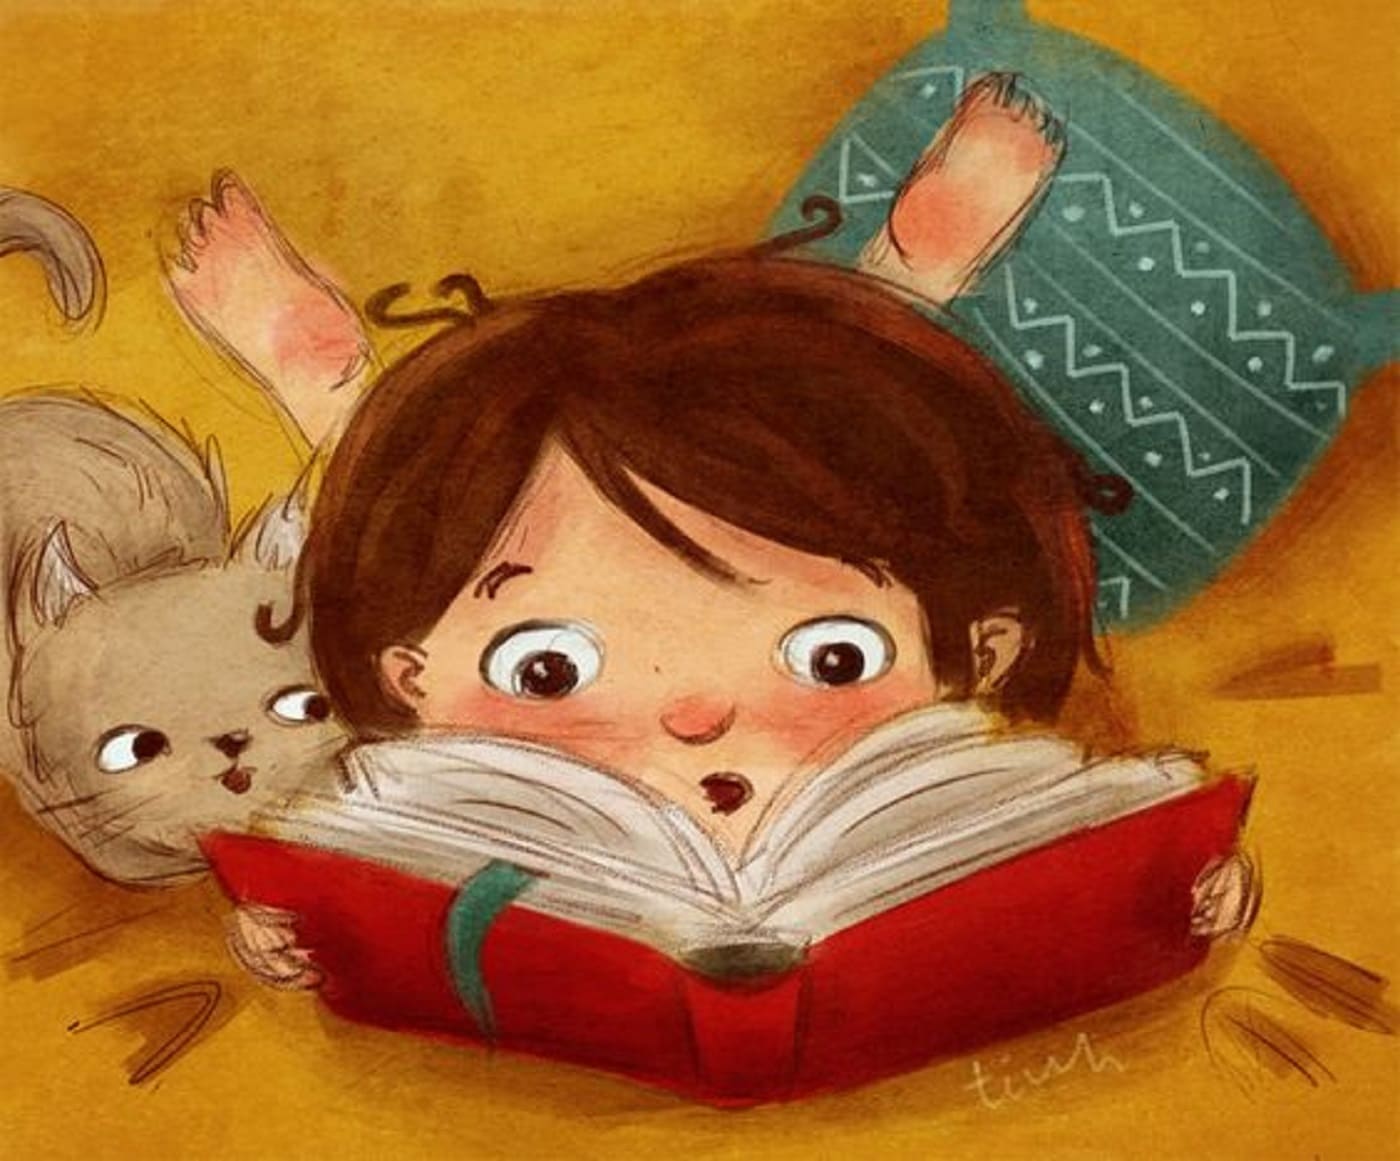 Я люблю читать книги потому что. Иллюстрацдетских книгх. Книжная иллюстрация. Детские книги. Детские книжки.